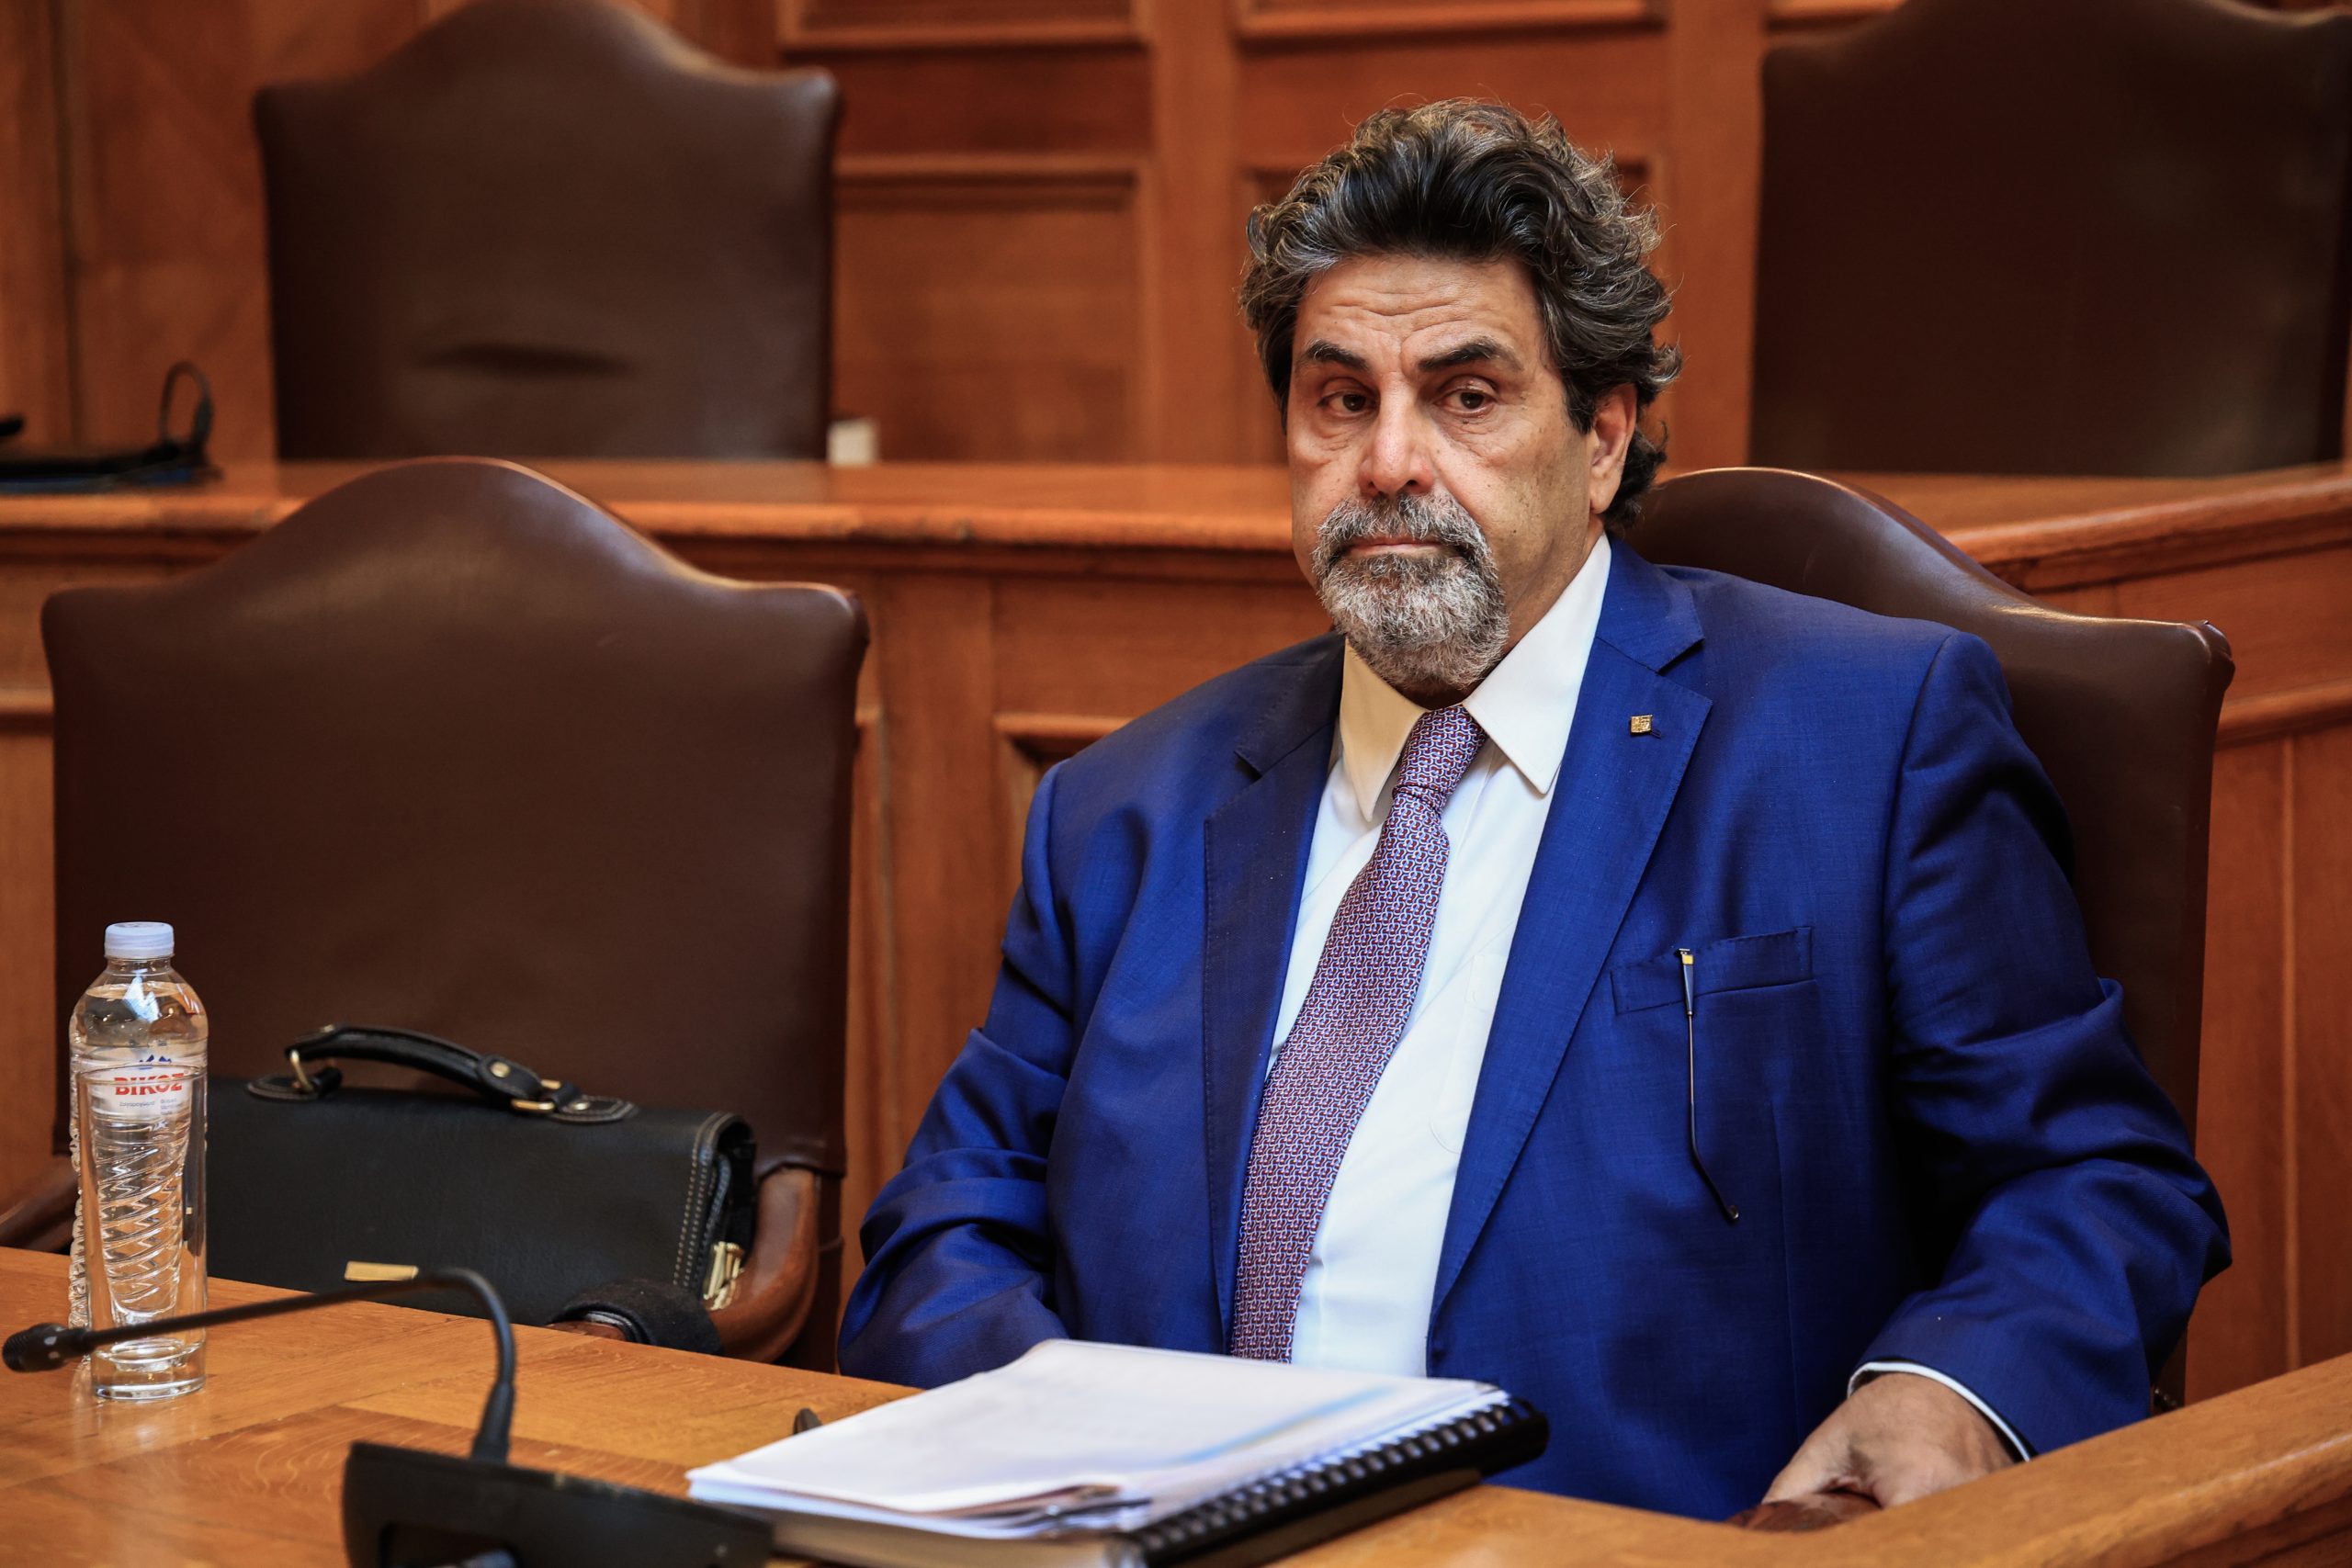 Πρόεδρος της επιτροπής Γεραπετρίτη για Τέμπη: «Προδήλως παράνομη η μετάταξη του σταθμάρχη – Ευθύνες στο υπουργείο Μεταφορών